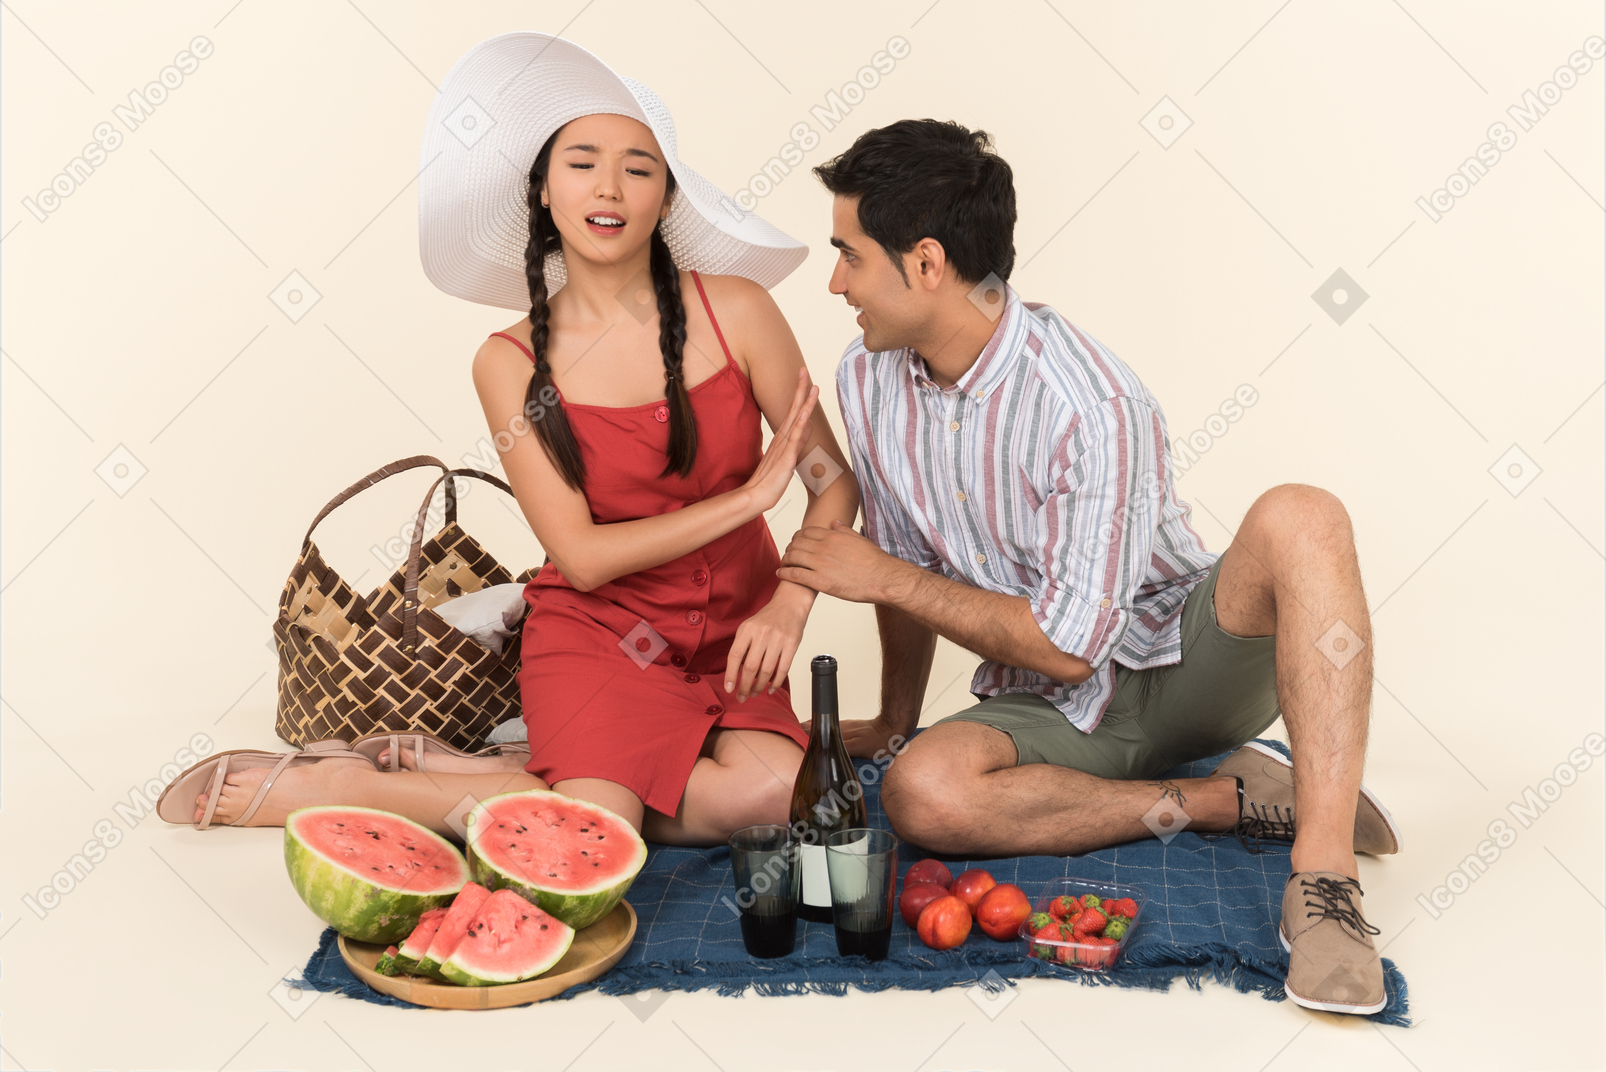 Junges interracial paar mit picknick und junge frau scheint nicht etwas zu mögen